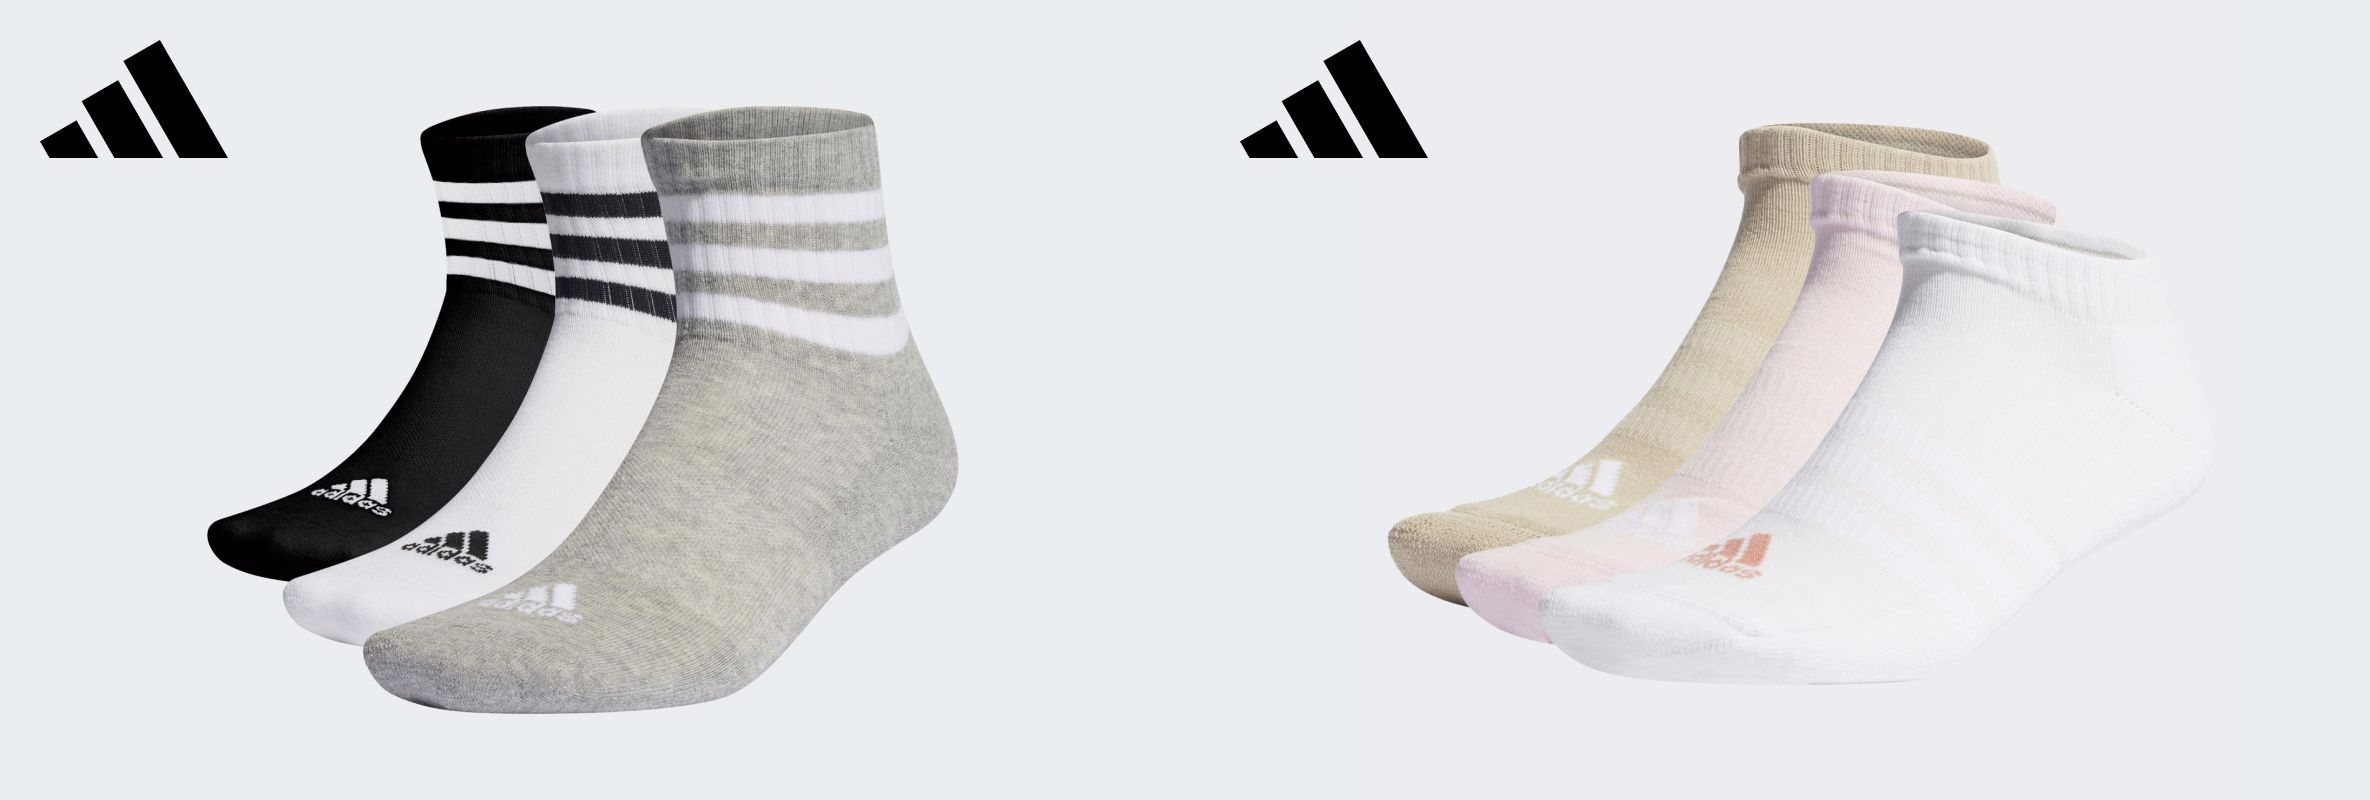 Обираймо шкарпетки від adidas разом!